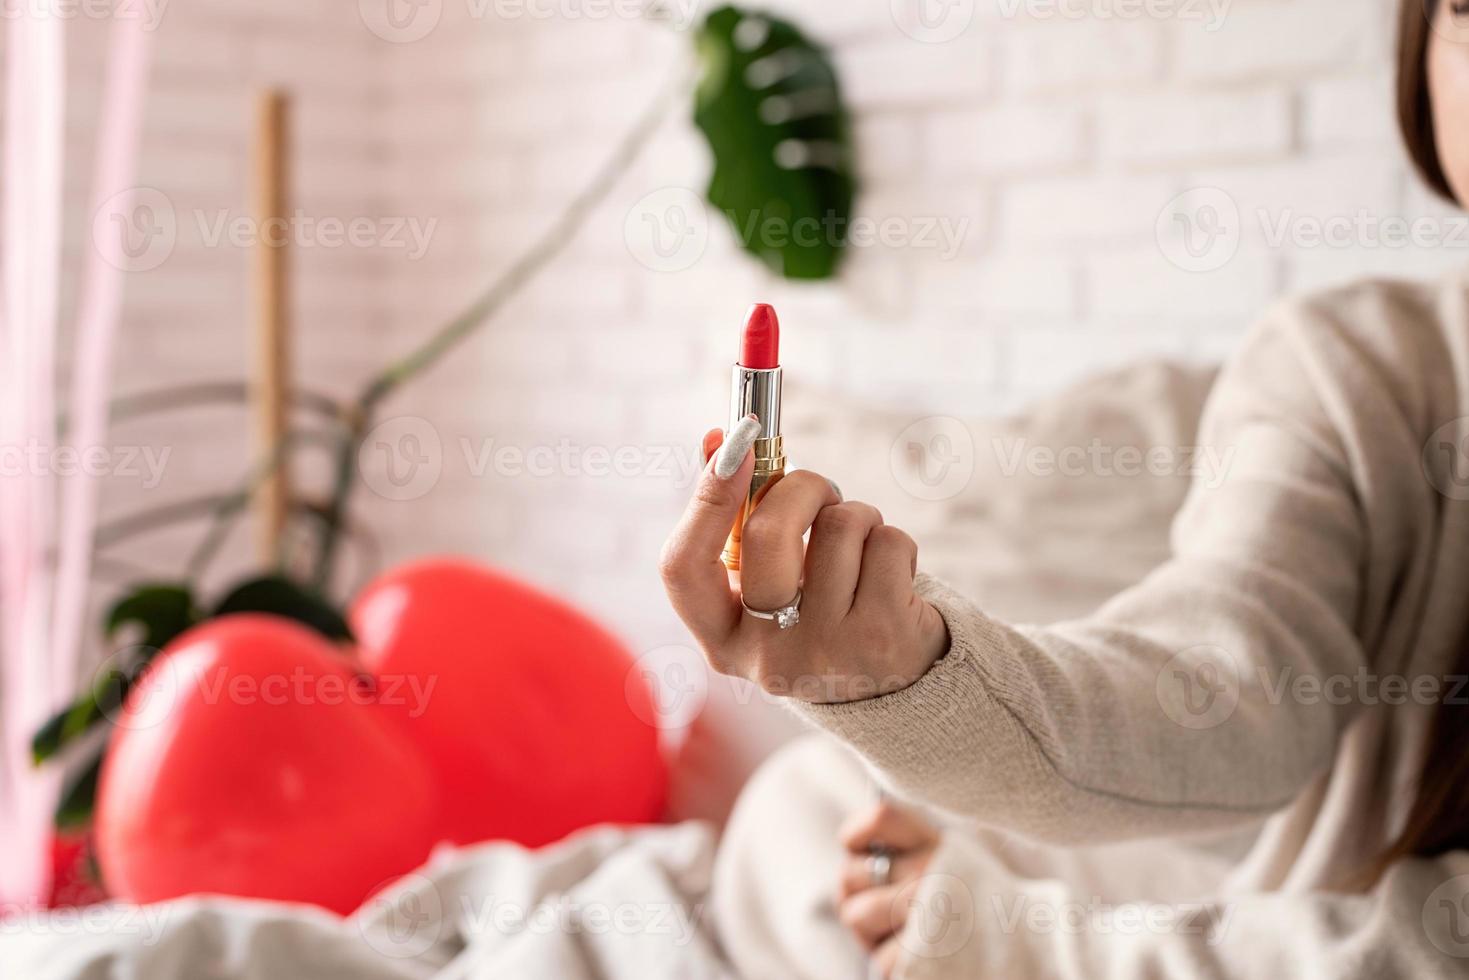 vrouwenhand die rode lippenstift houden foto